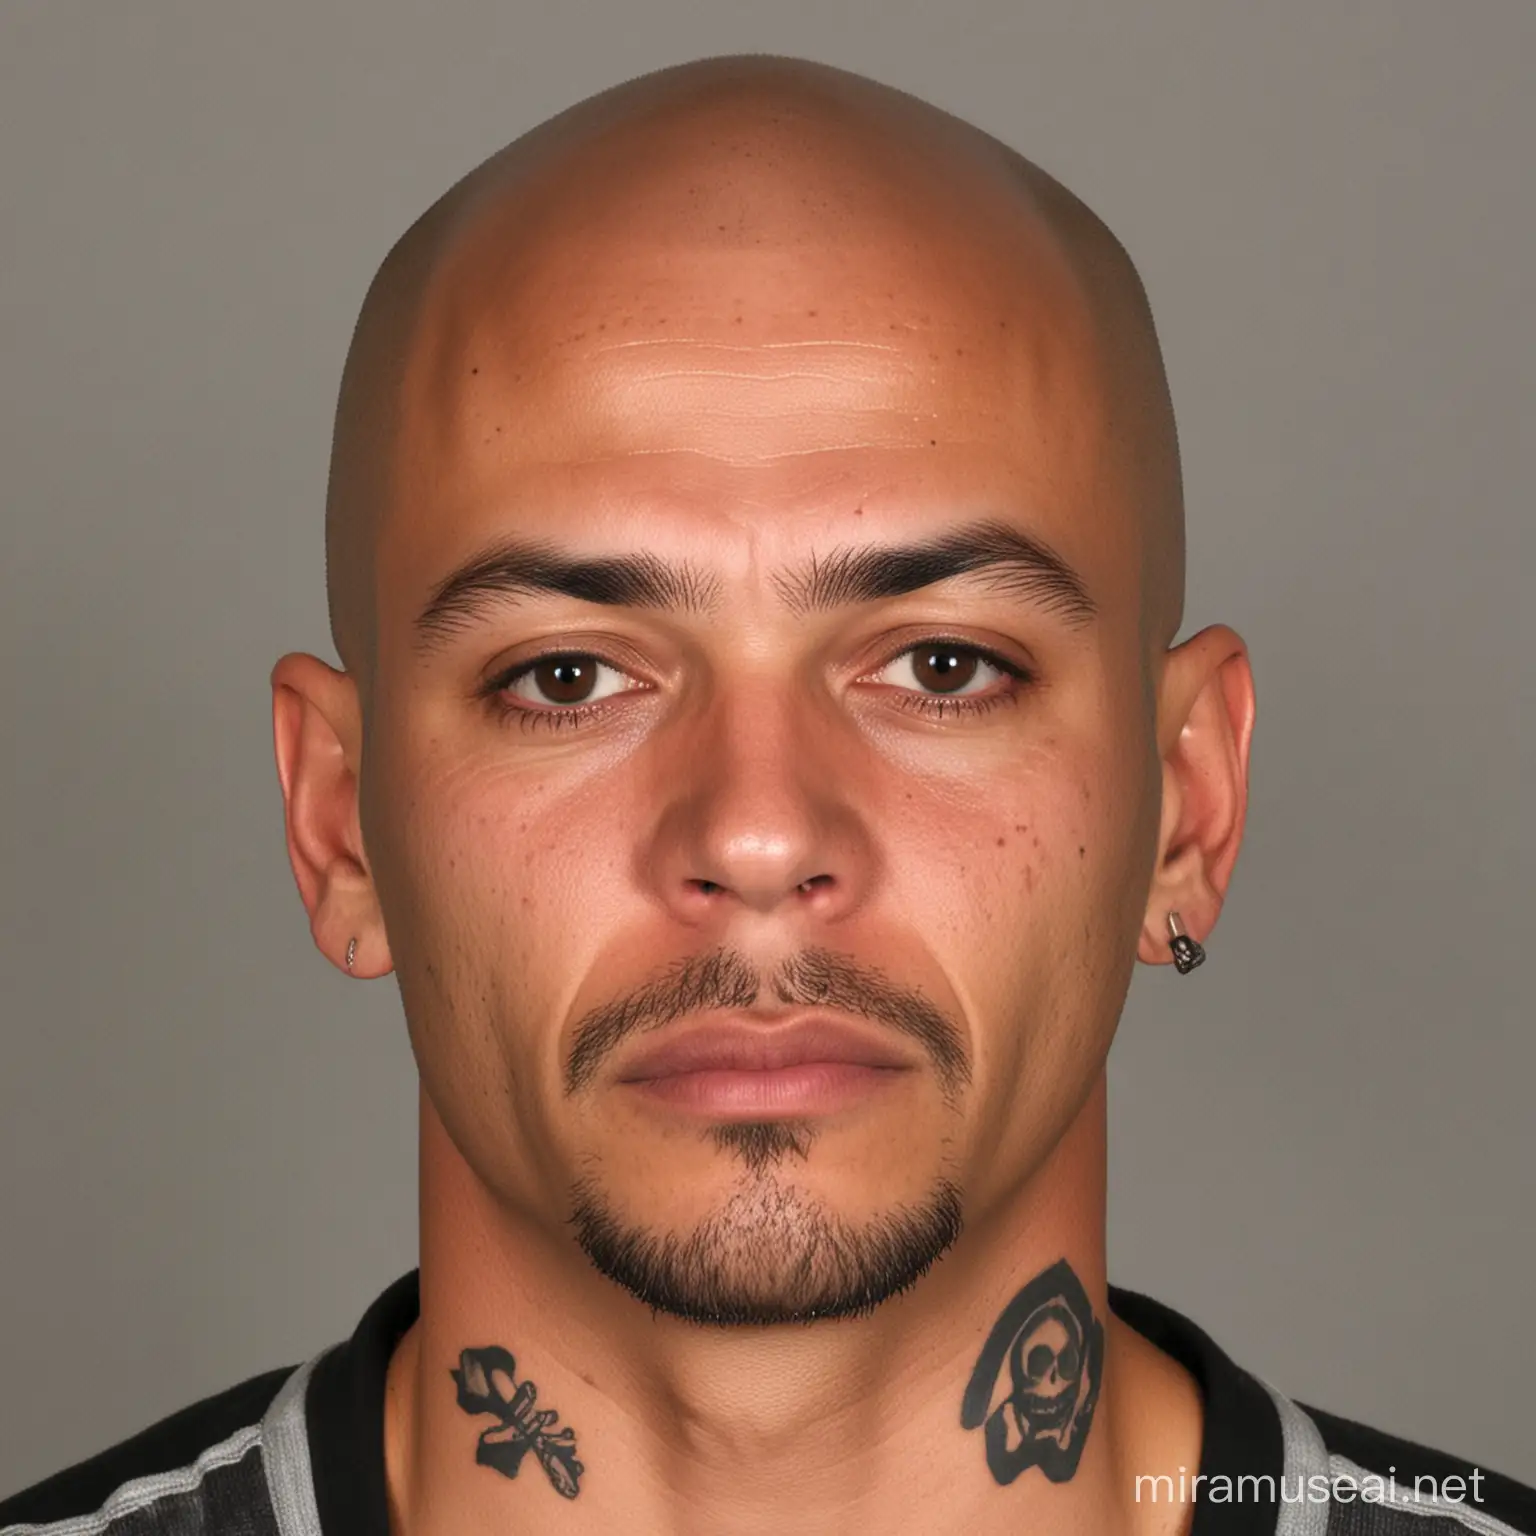 Mugshot of Wanted Man David Brown with Skull Tattoo